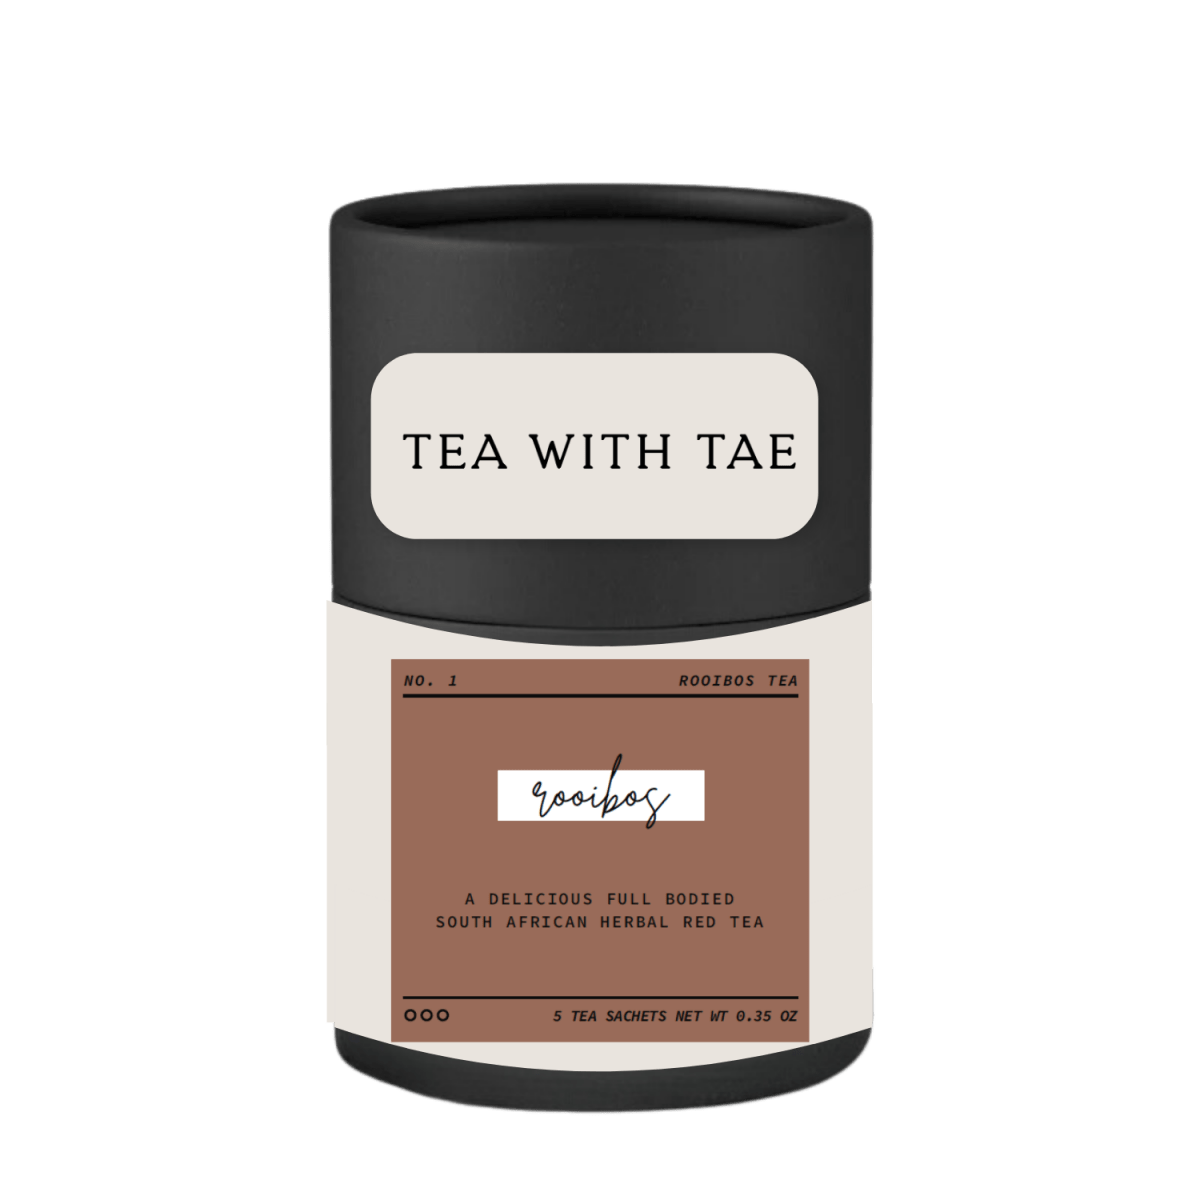 Rooibos Artisan Mini Tea Tube (5 tea sachets) - Tea with Tae